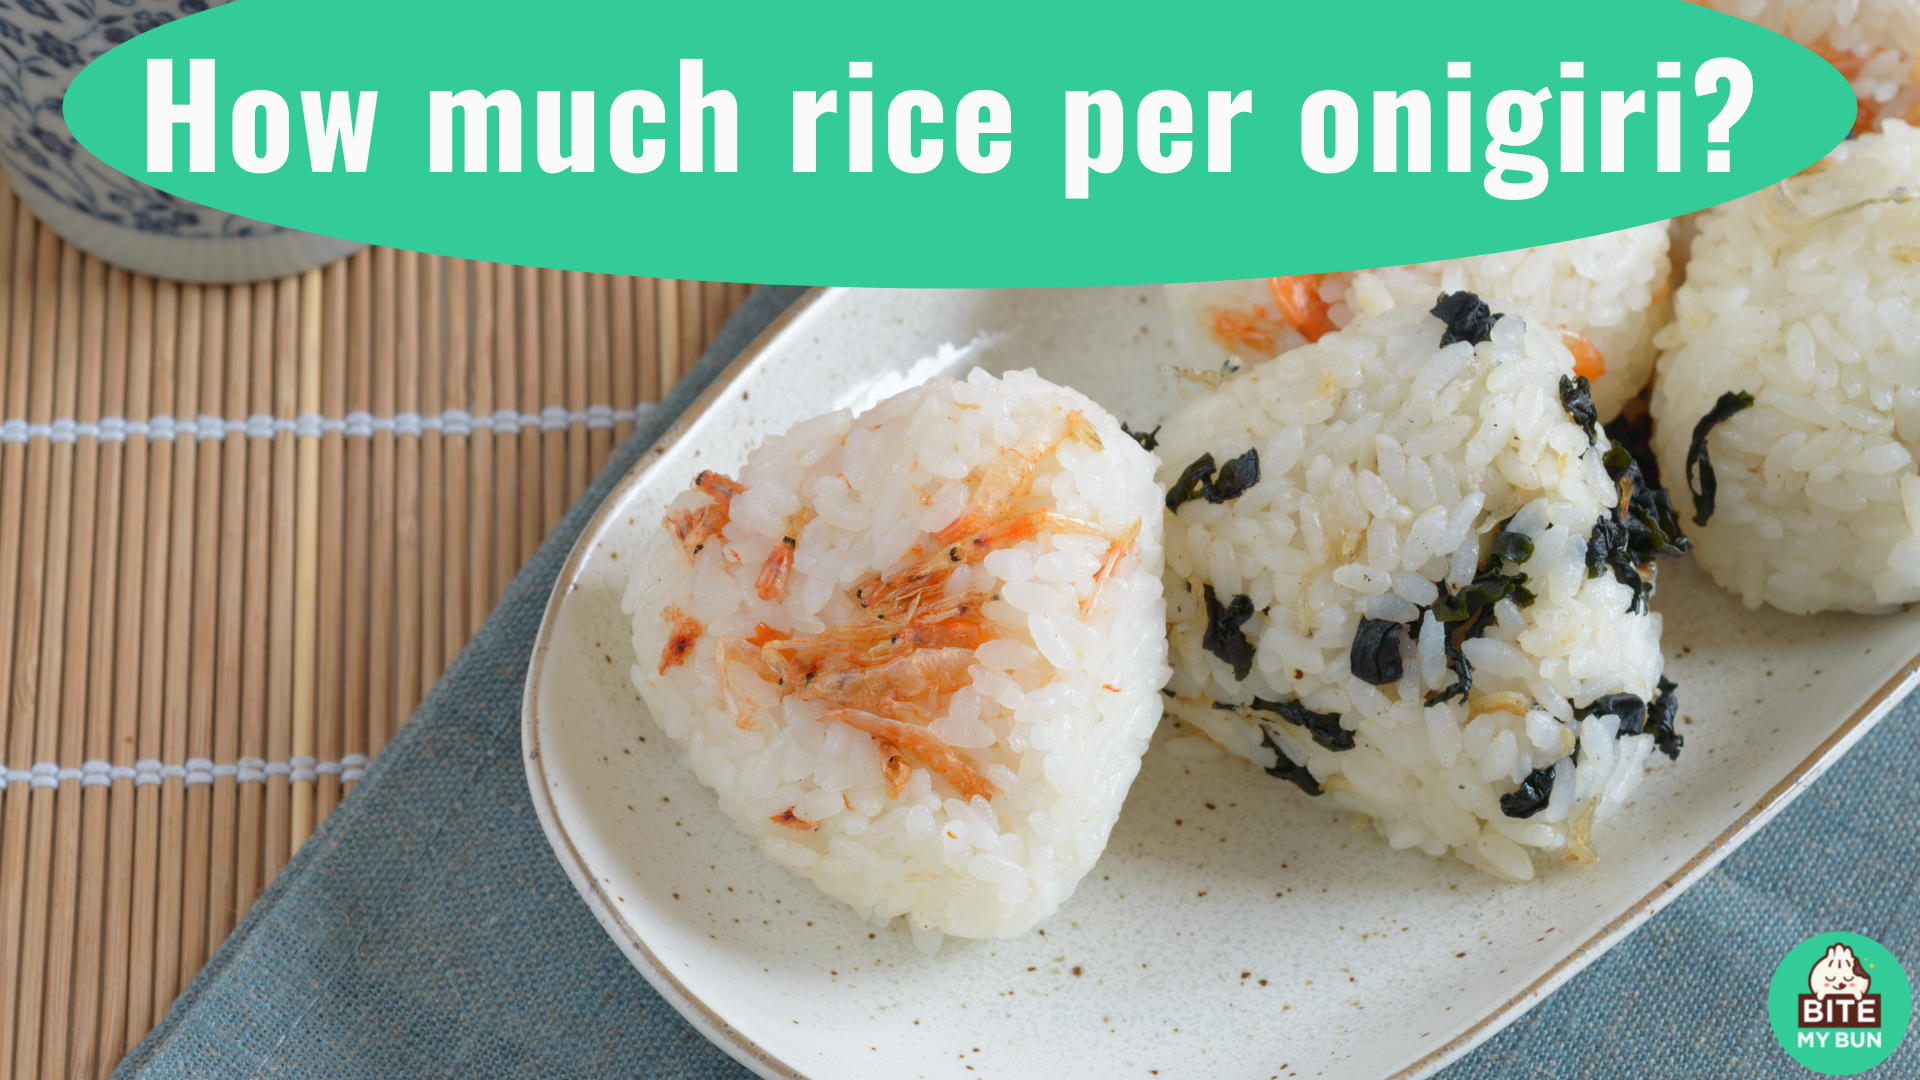 Hur mycket ris per onigiri? Det beror på hur du gillar att göra det